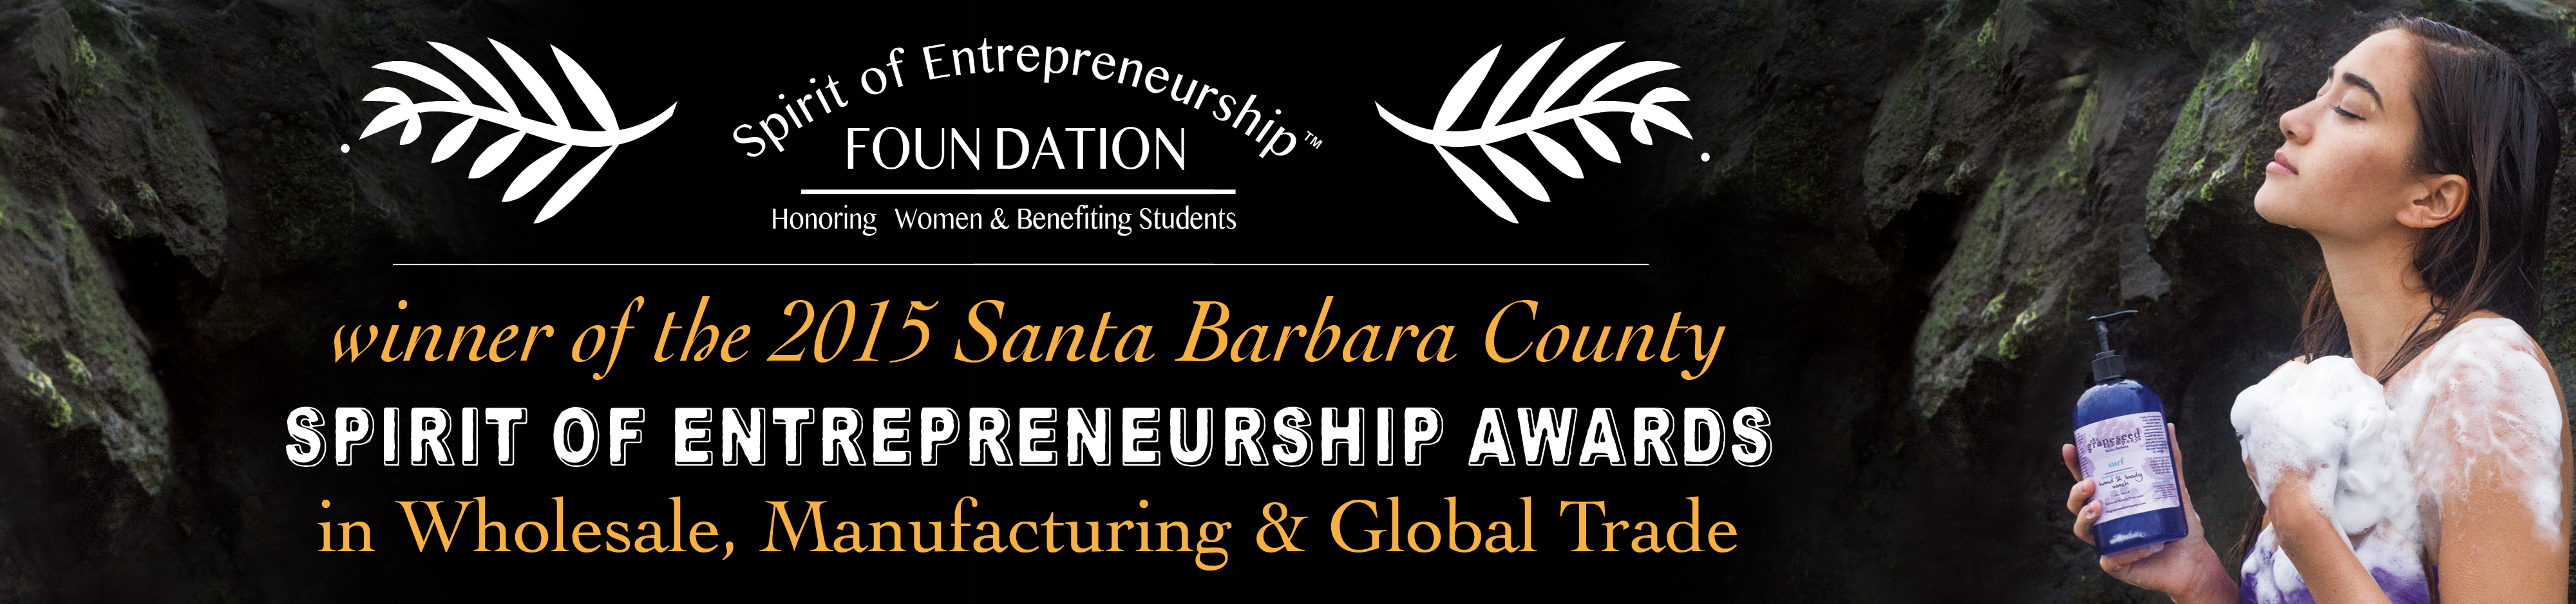 entrepreneurship-award-banner.jpg